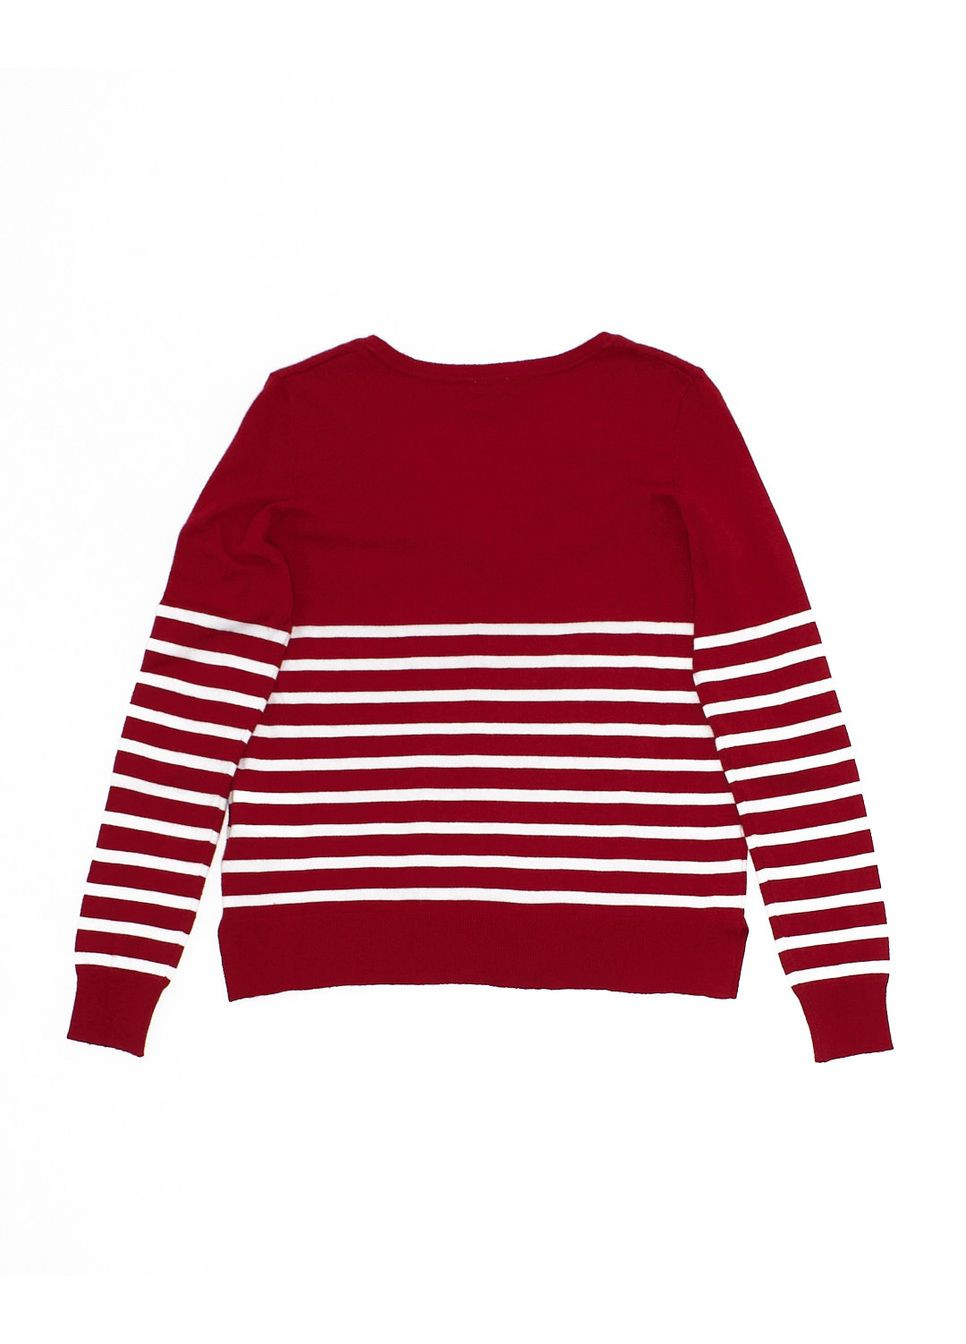 Червоний пуловер демісезон,червоний в смужку,pimkie No Brand